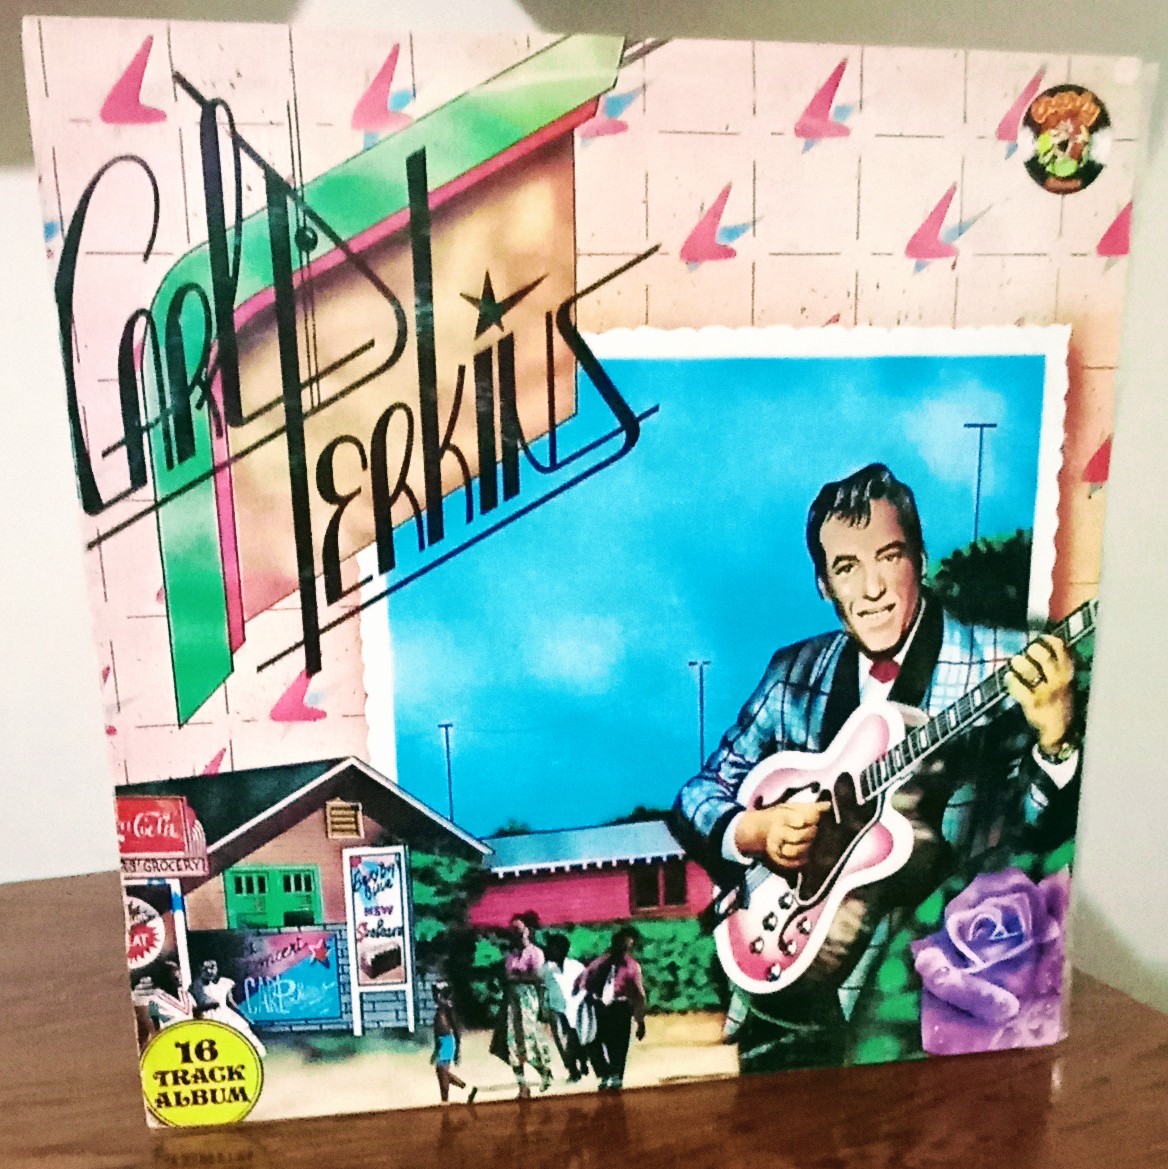 Carl Perkins 'Rocking Guitarman'

Album reúne faixas de 1955 a 56, dentre elas Blue Suede Shoes, Honey Don't, Y.O.U, e outras
Clássico do Rock and Roll. 

#CarlPerkins